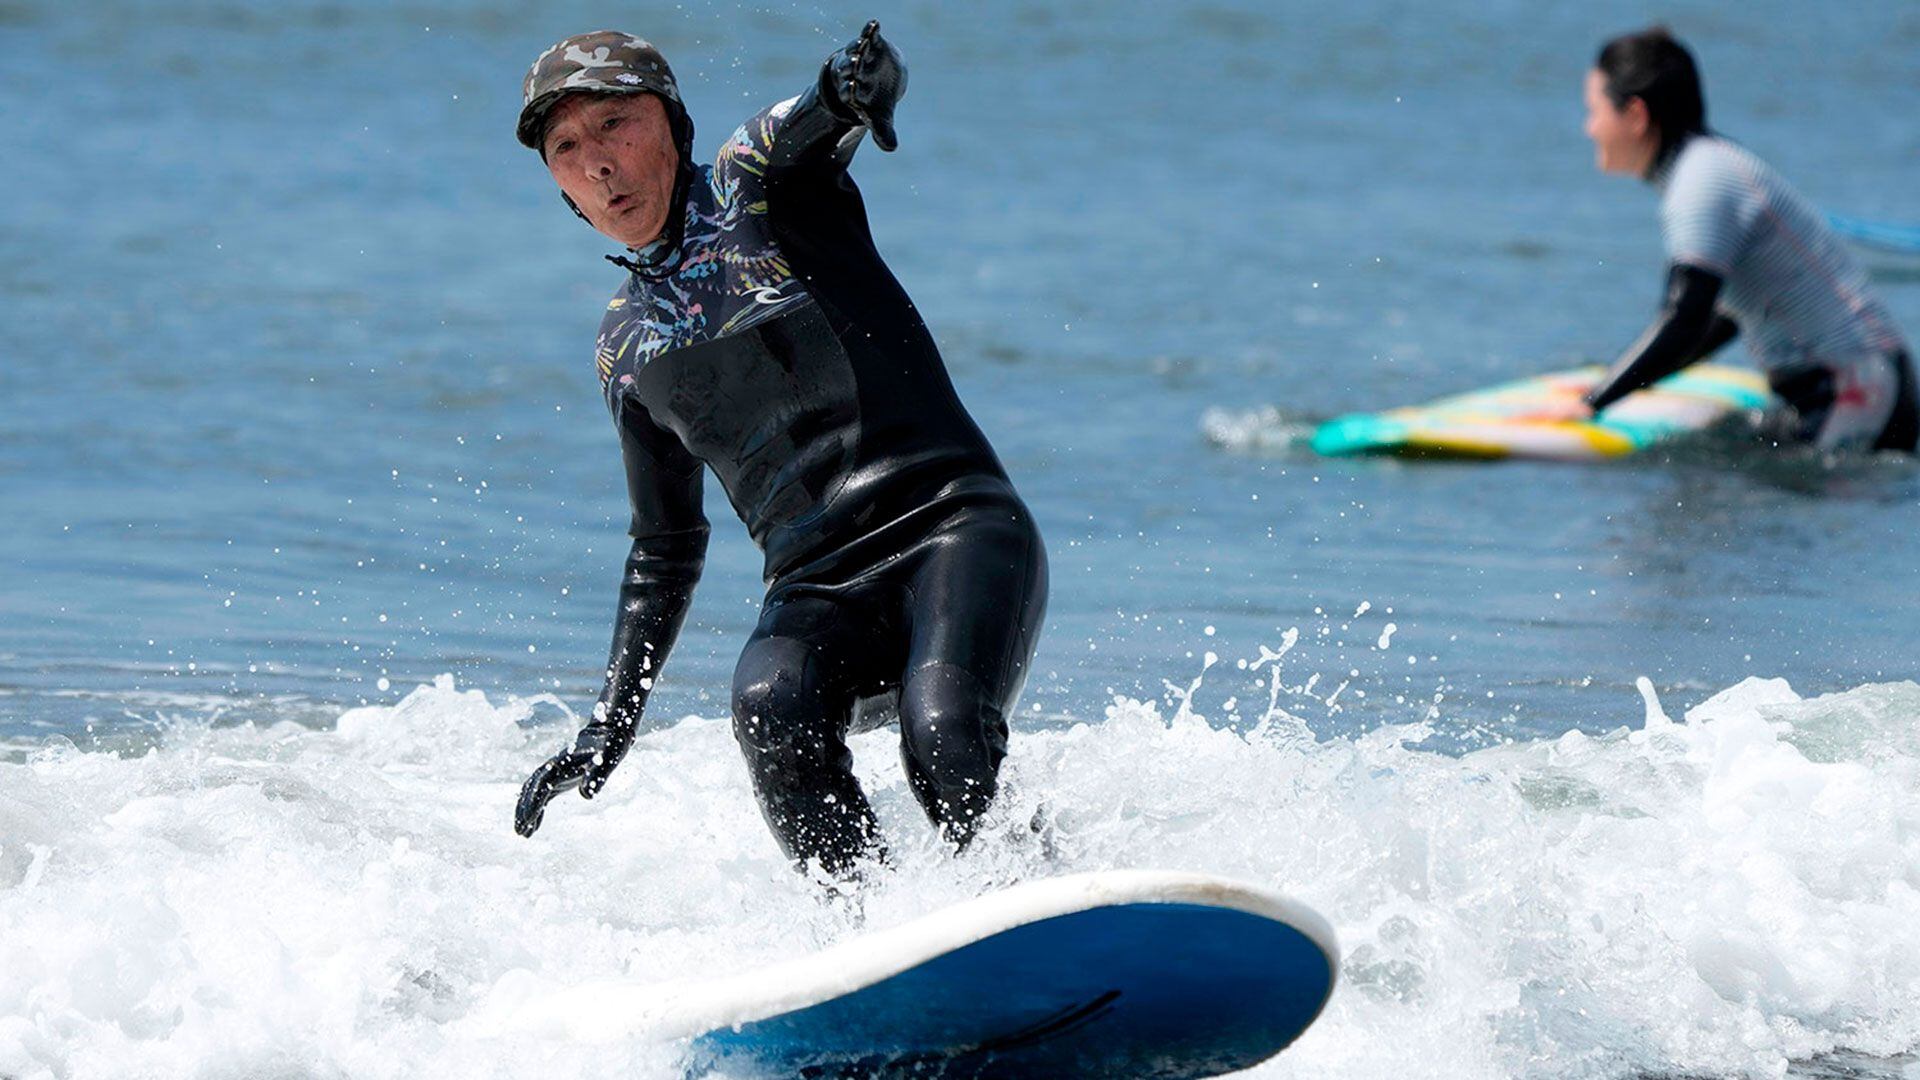 La historia de Sano Seiichi, surfista de 90 años